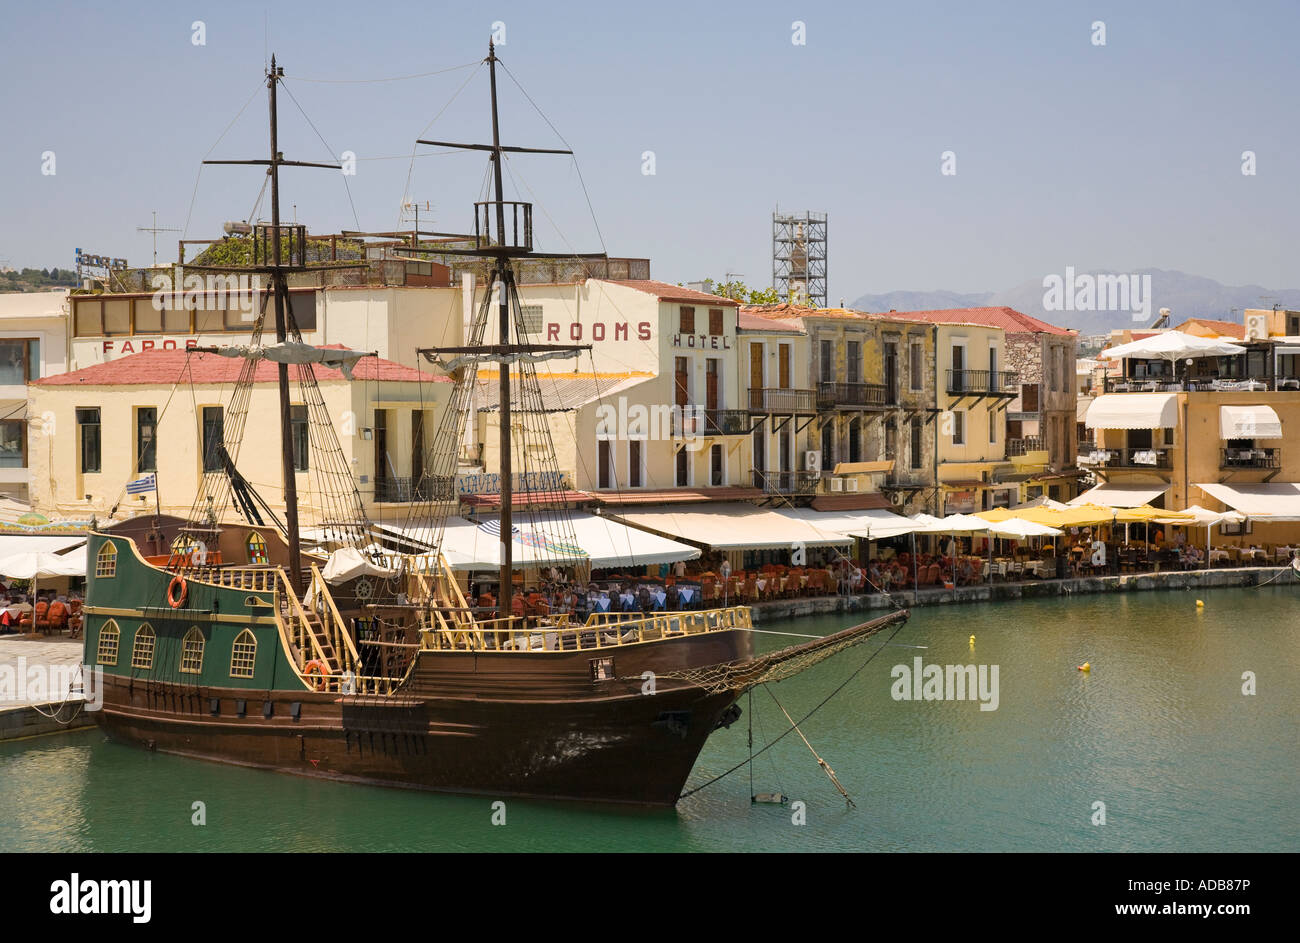 El barco turístico "Capitán Hook", diseñado como un barco pirata, en el puerto veneciano de Rethymnon / Grecia / Creta Foto de stock